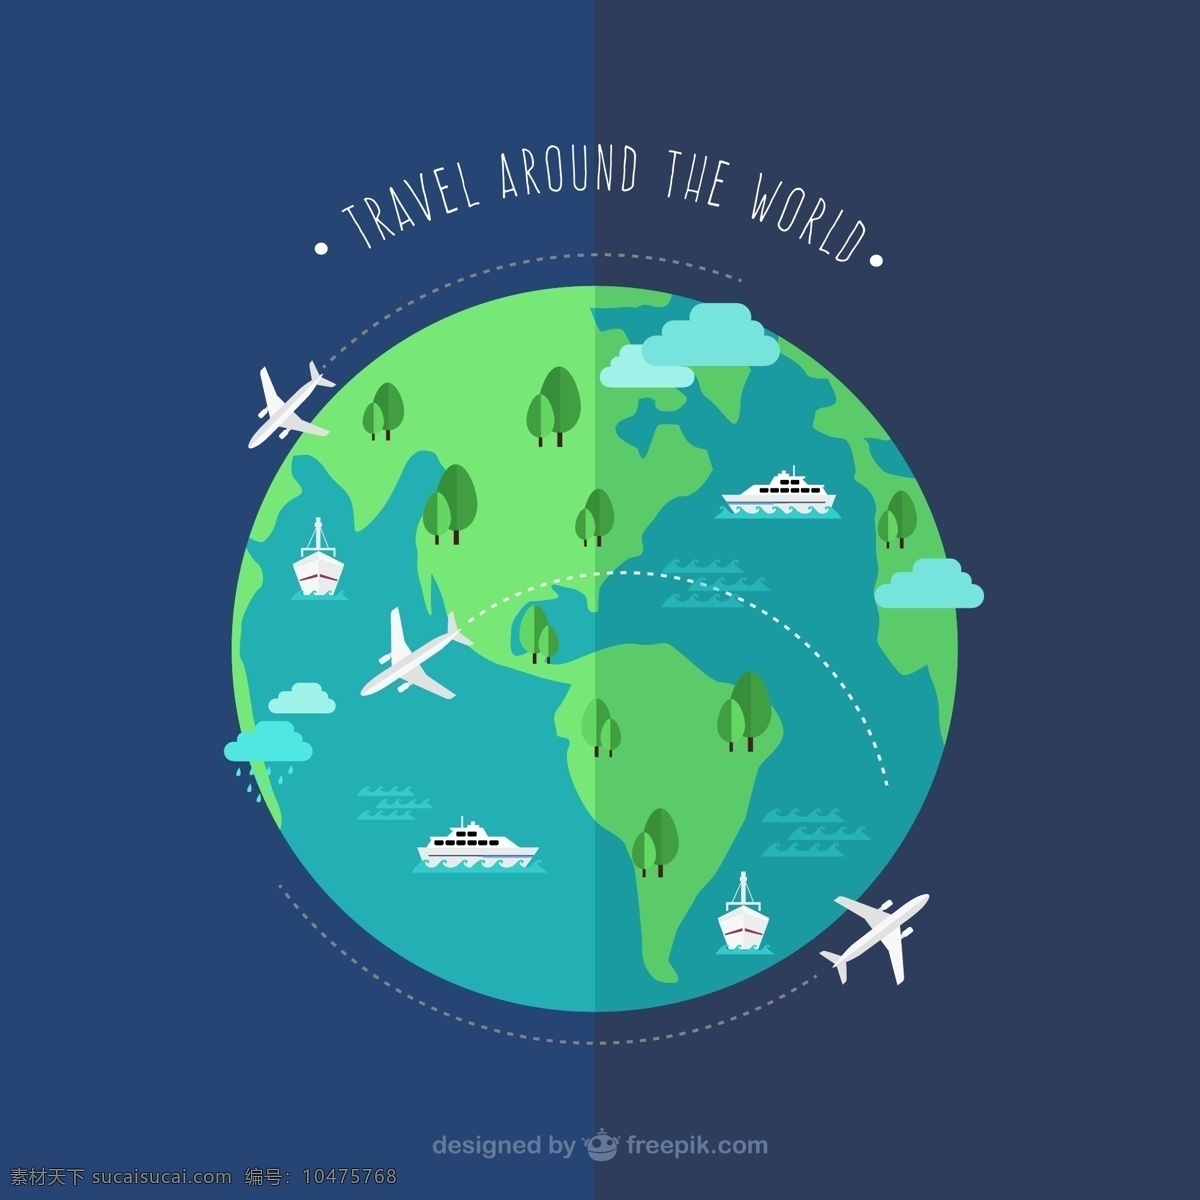 创意 环球 旅行 地球 插画 矢量图 云朵 飞机 环球旅行 航线 轨迹 森林 邮轮 矢量图... 青色 天蓝色